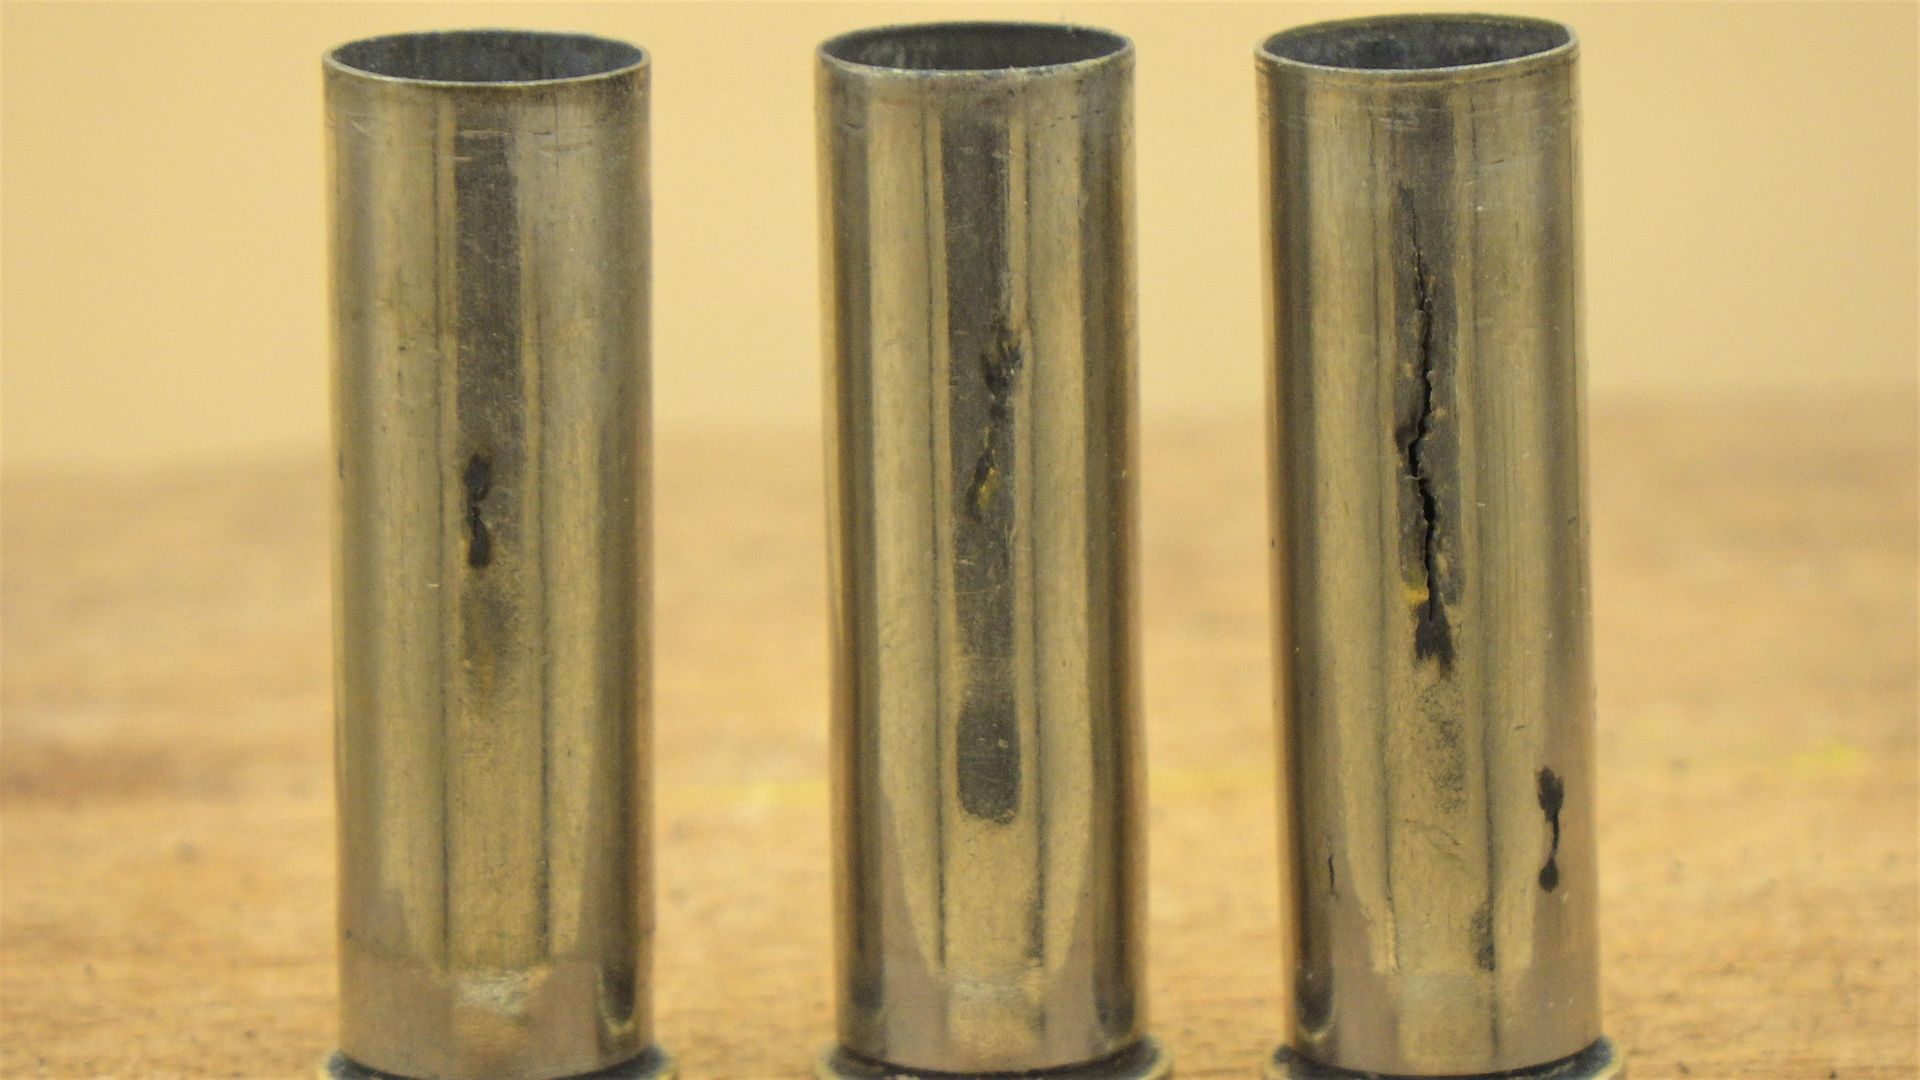 Reloading for beginners: preparing bullet cases